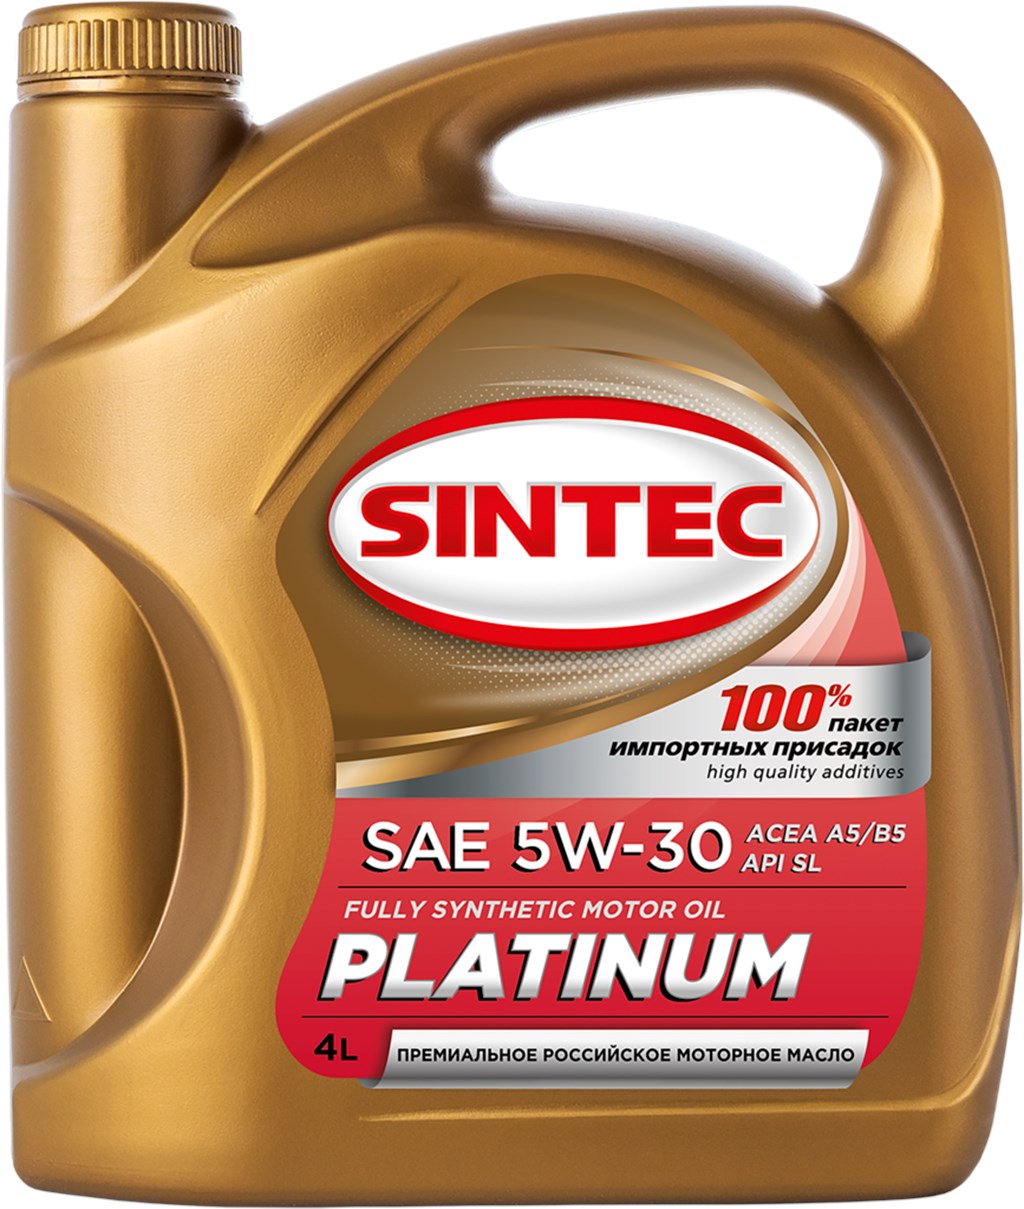 Обзор масла SINTEC Platinum 5W-30 API SL ACEA A5B5 - тест плюсы минусы отзывы характеристики - все о масле SINTEC Platinum